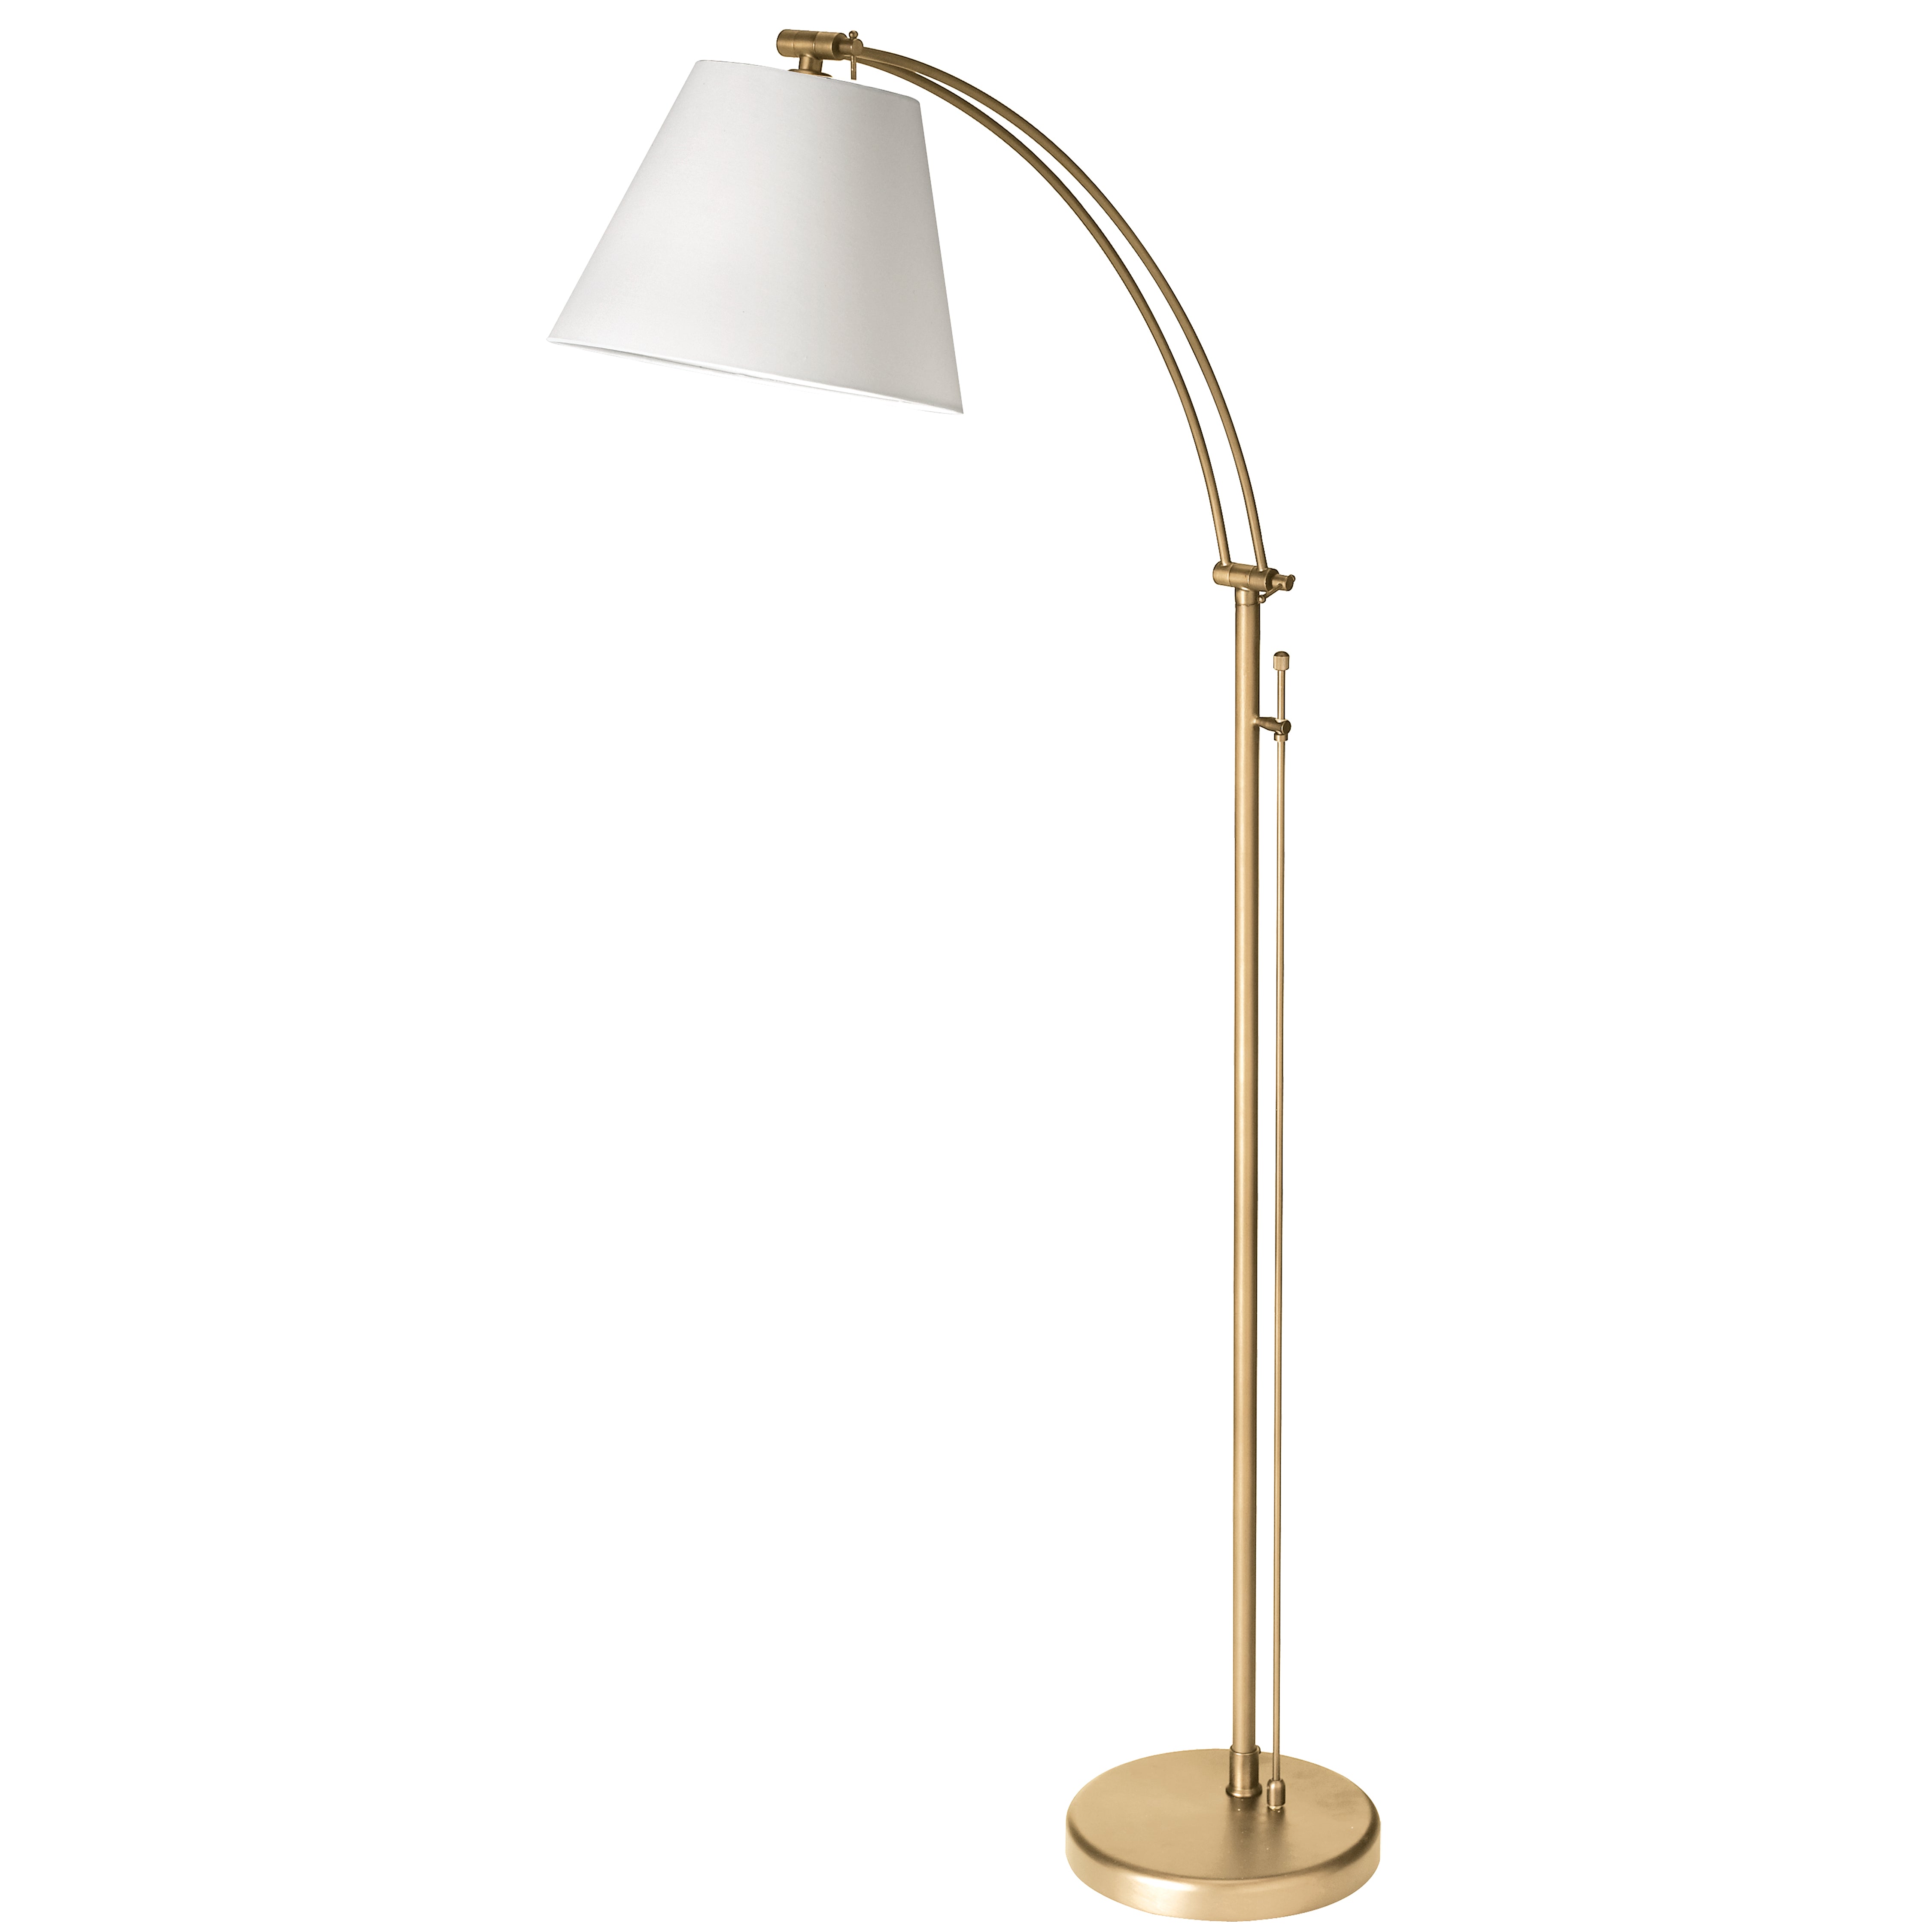 FELIX Floor lamp Gold - DM2578-F-AGB | DAINOLITE